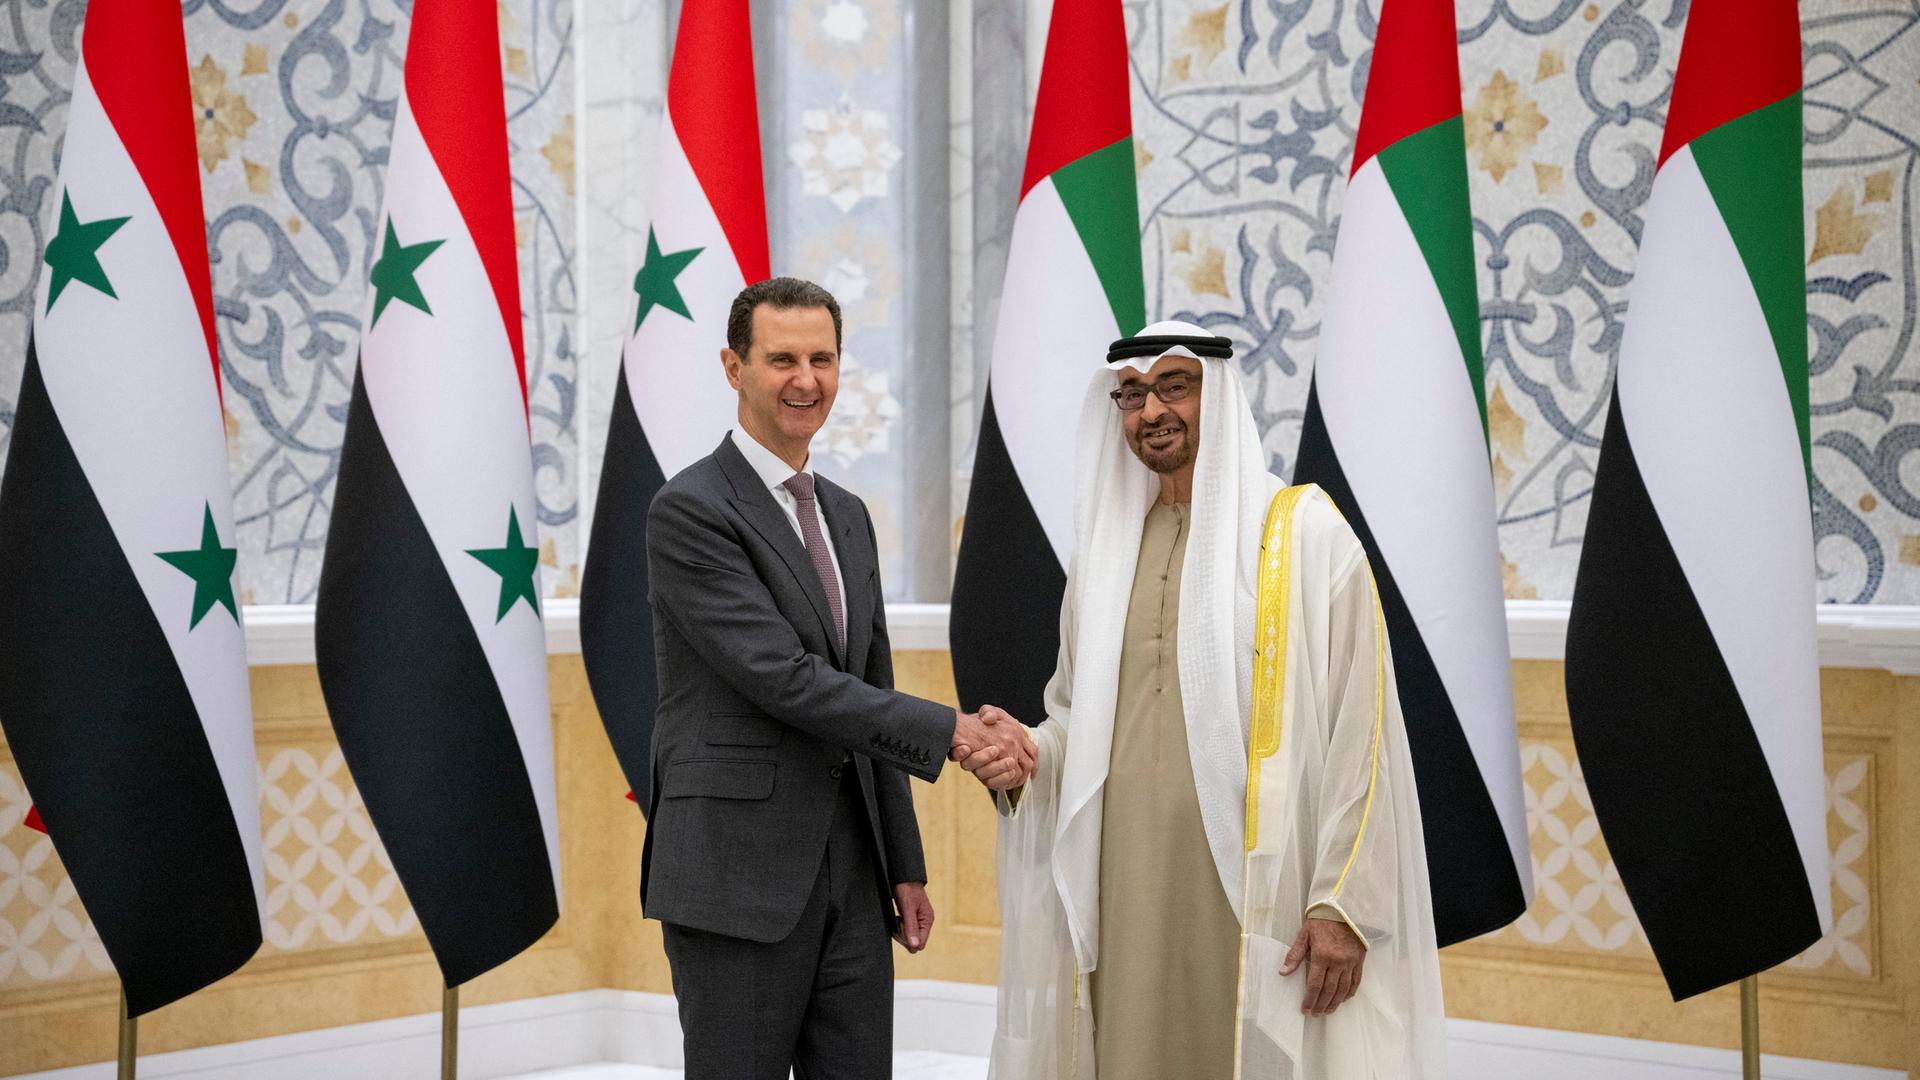 Der syrische Präsident Baschar al-Assad schüttelt dem Präsidenten der Vereinigten Arabischen Emirate, Scheich Mohammed bin Zayed, die Hand. Im Hintergrund sind Fahnen der beiden Länder.